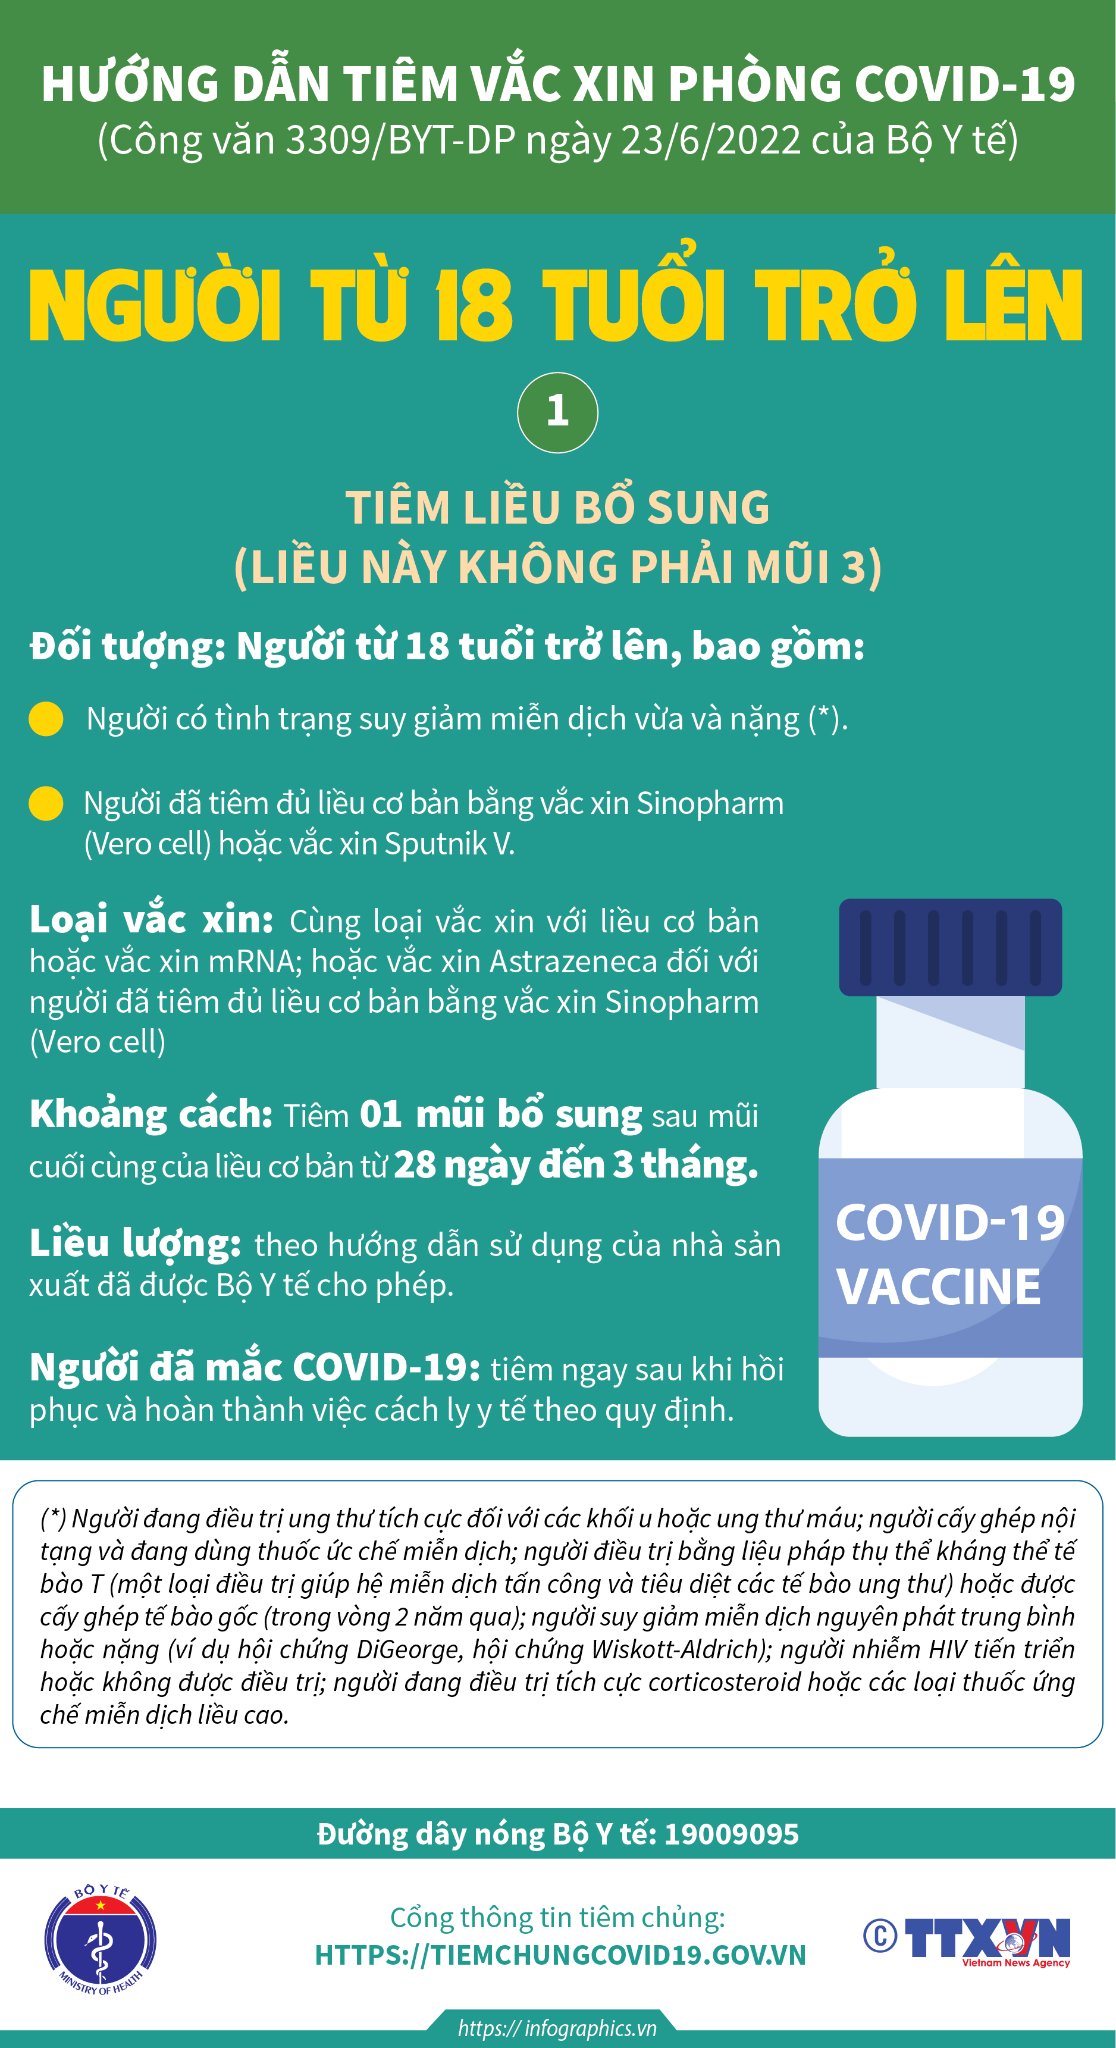 [Infographic] - Hướng dẫn tiêm liều bổ sung, mũi 3, mũi 4 vaccine COVID-19-1